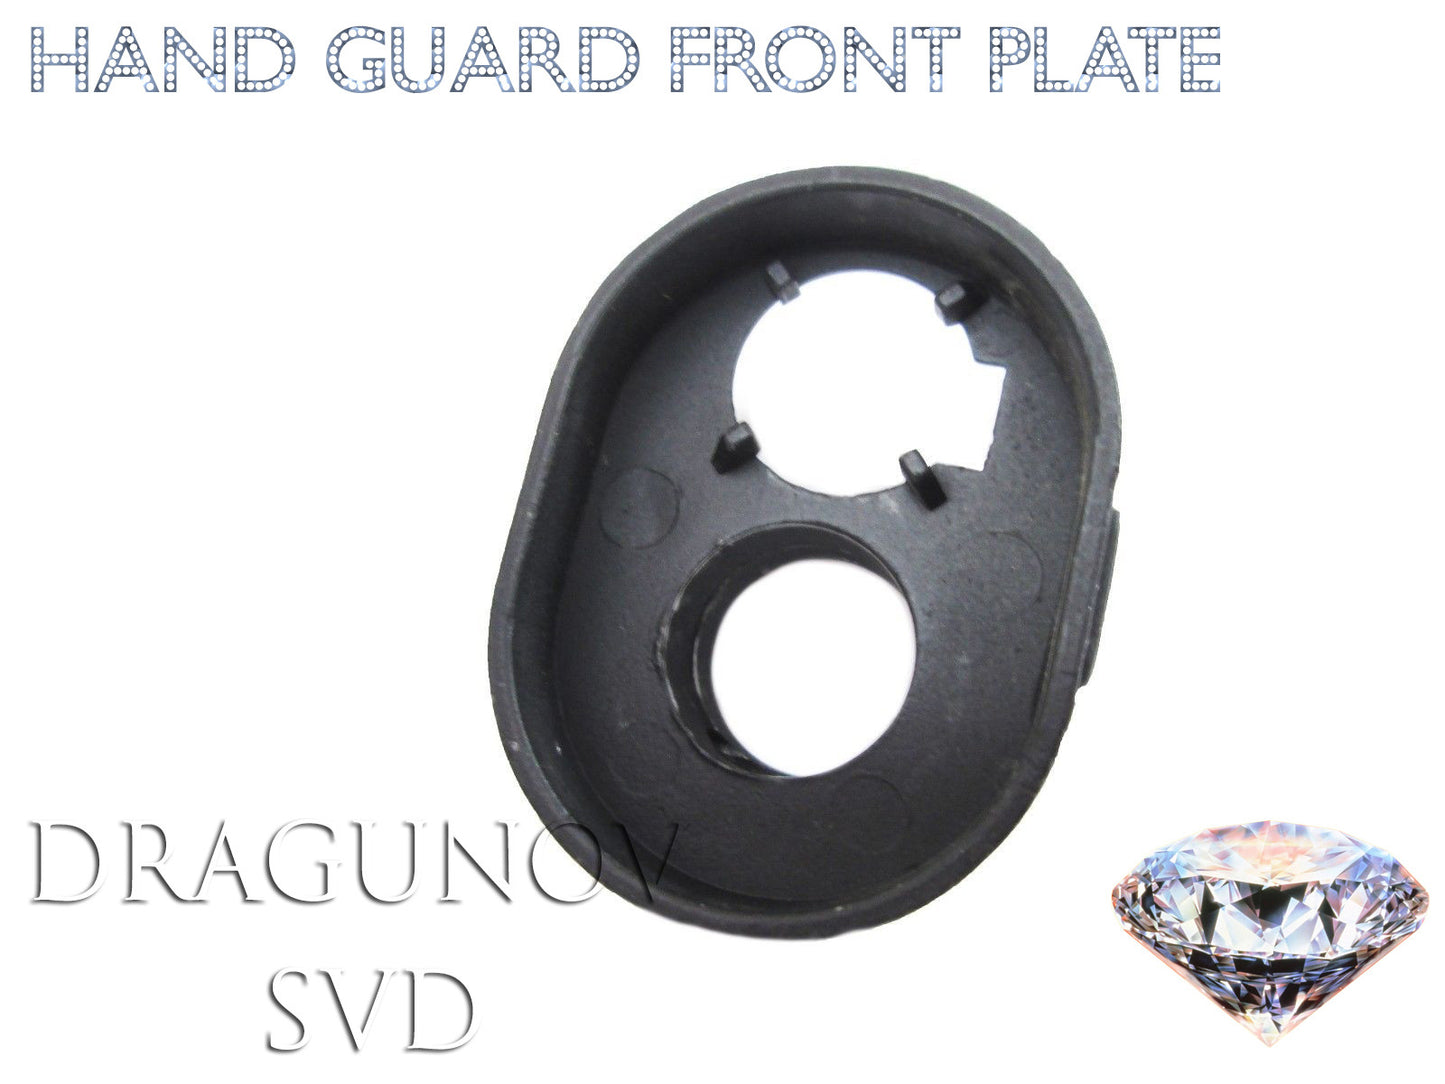 Full Metal Dragunov SVD Front Hand Guard Cap Replacement